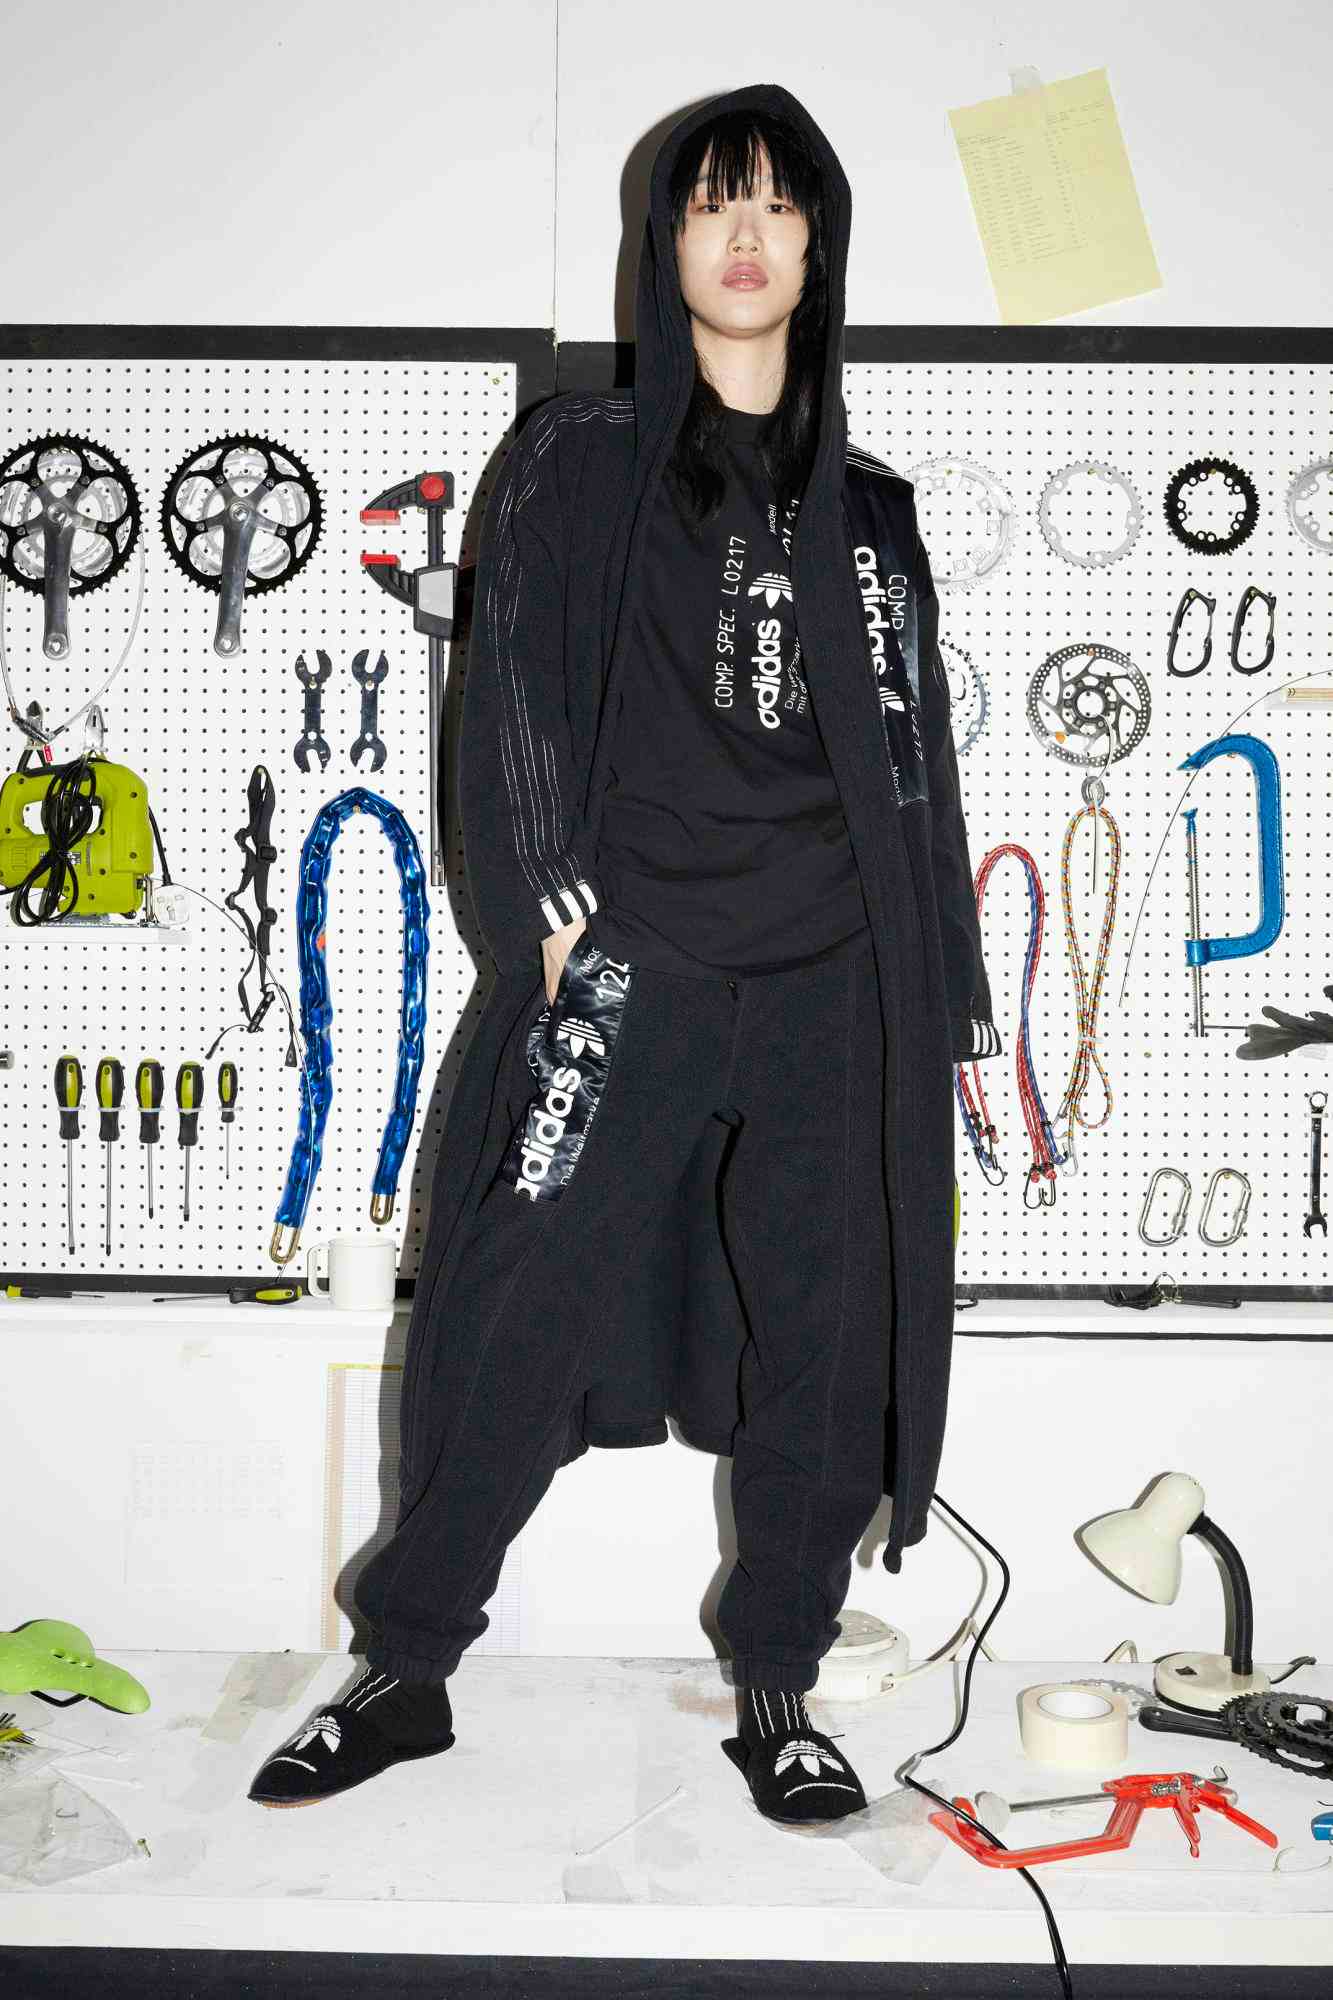 ADIDAS x ALEXANDER WANG - Adidas Originals 
Photographer: Juergen Teller
Stylist: Elin Svahn
